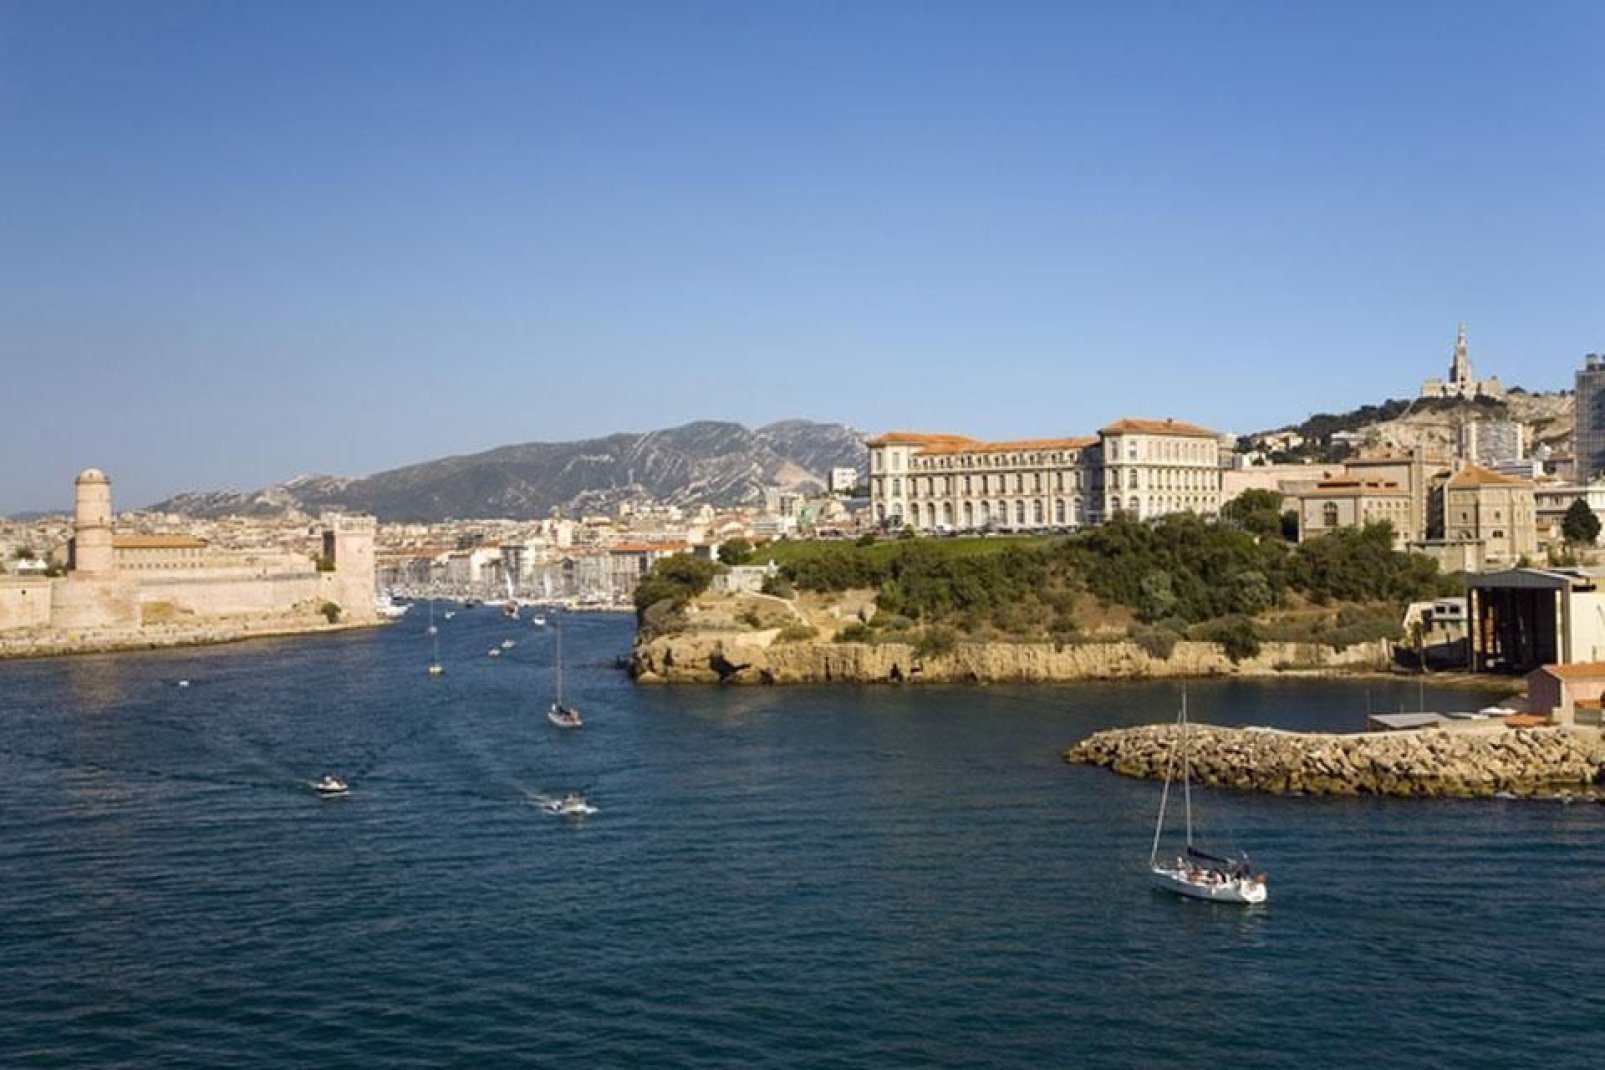 Wenn man über den Wasserweg nach Marseille reist, entdeckt man zuerst den "Palais du Pharo" und das "Fort Saint-Jean".